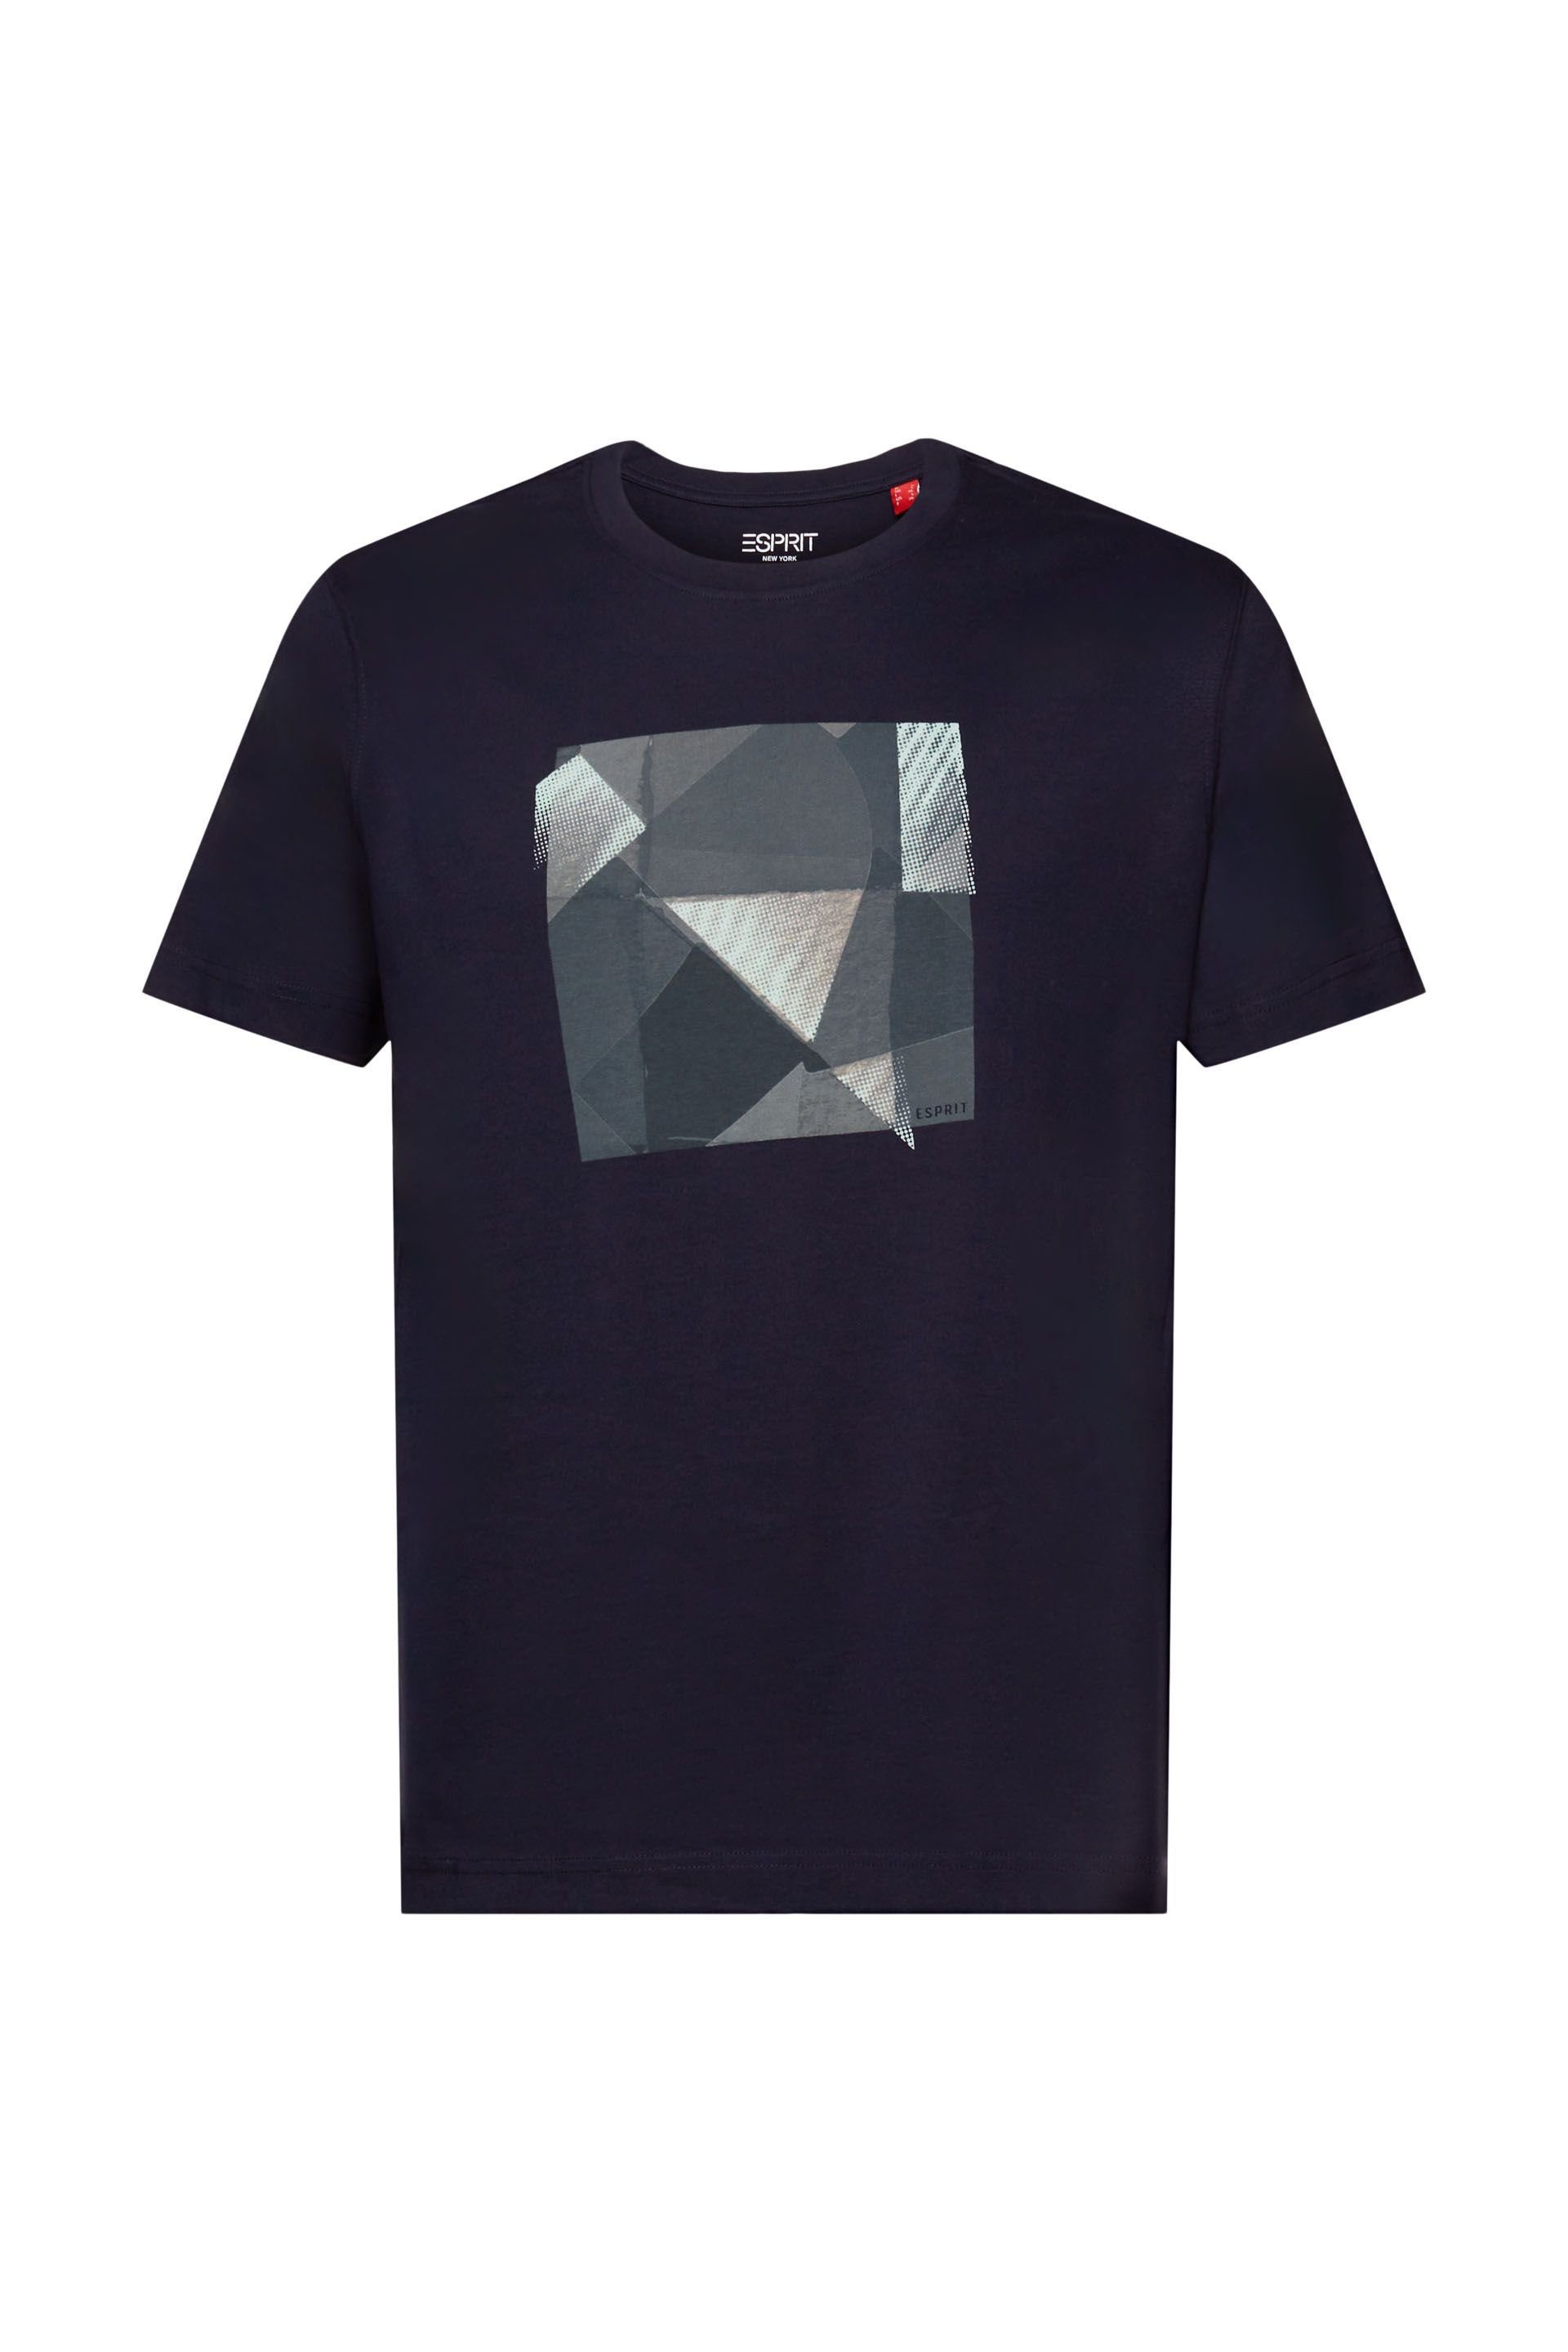 Esprit T-Shirt navy